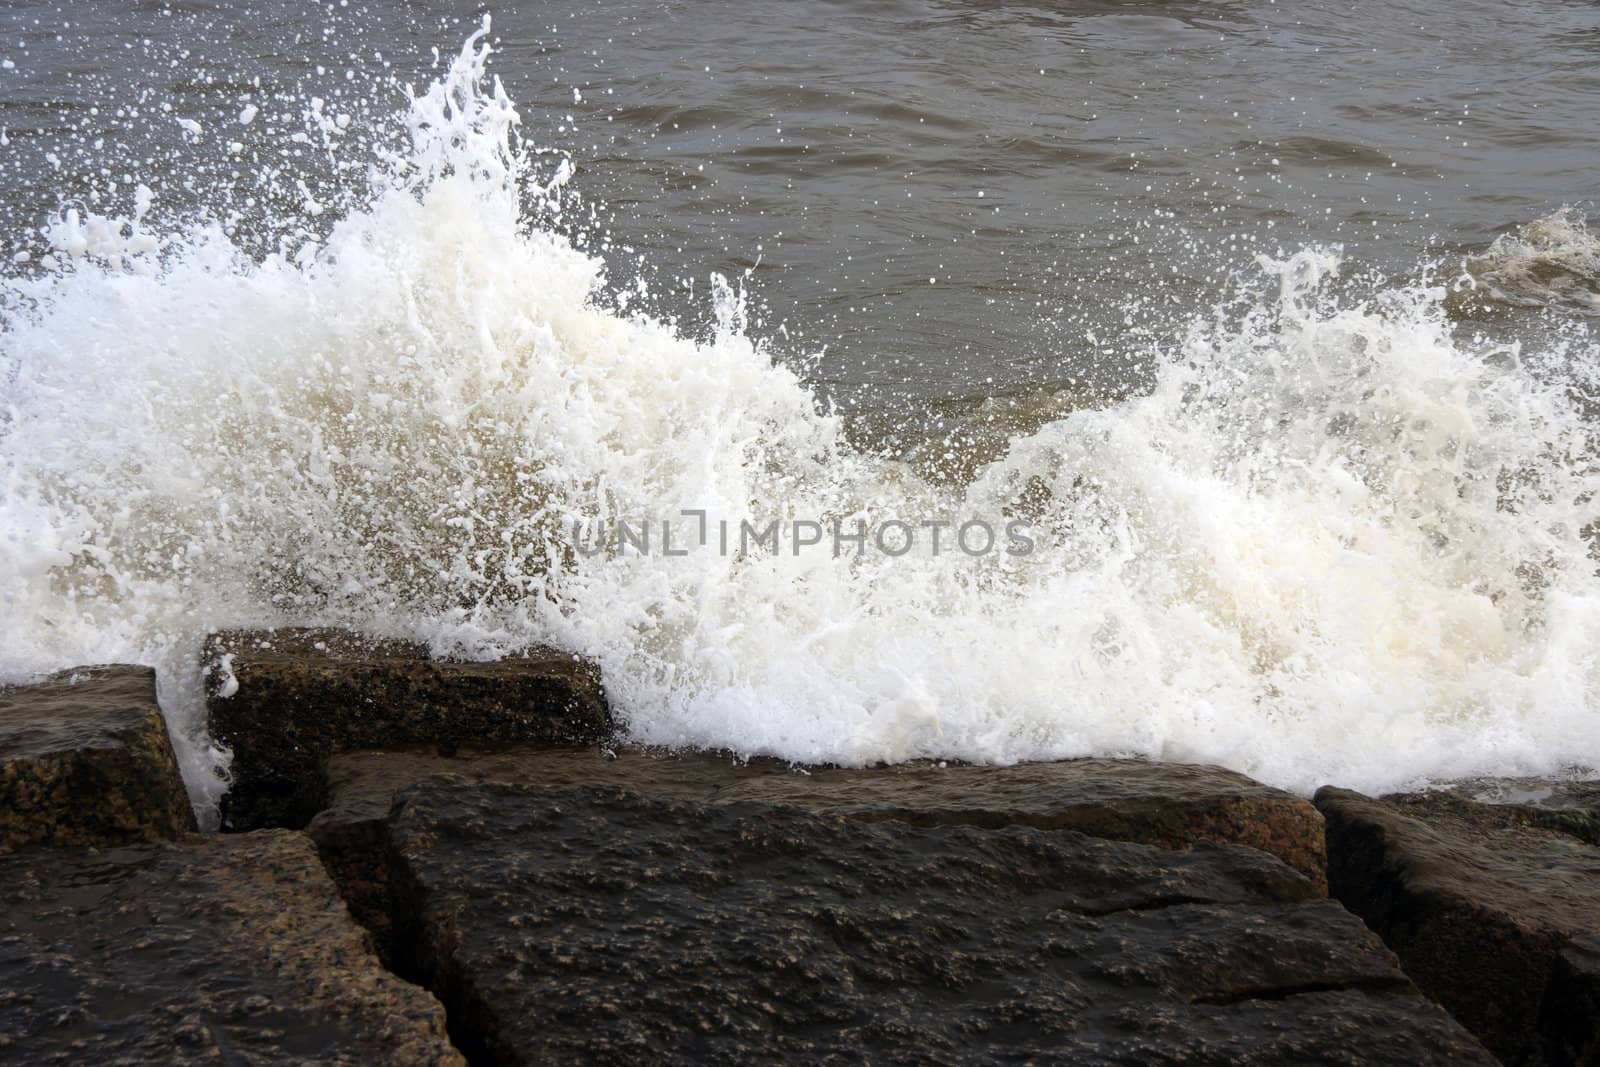 Ocean waves crashing onto some rocks